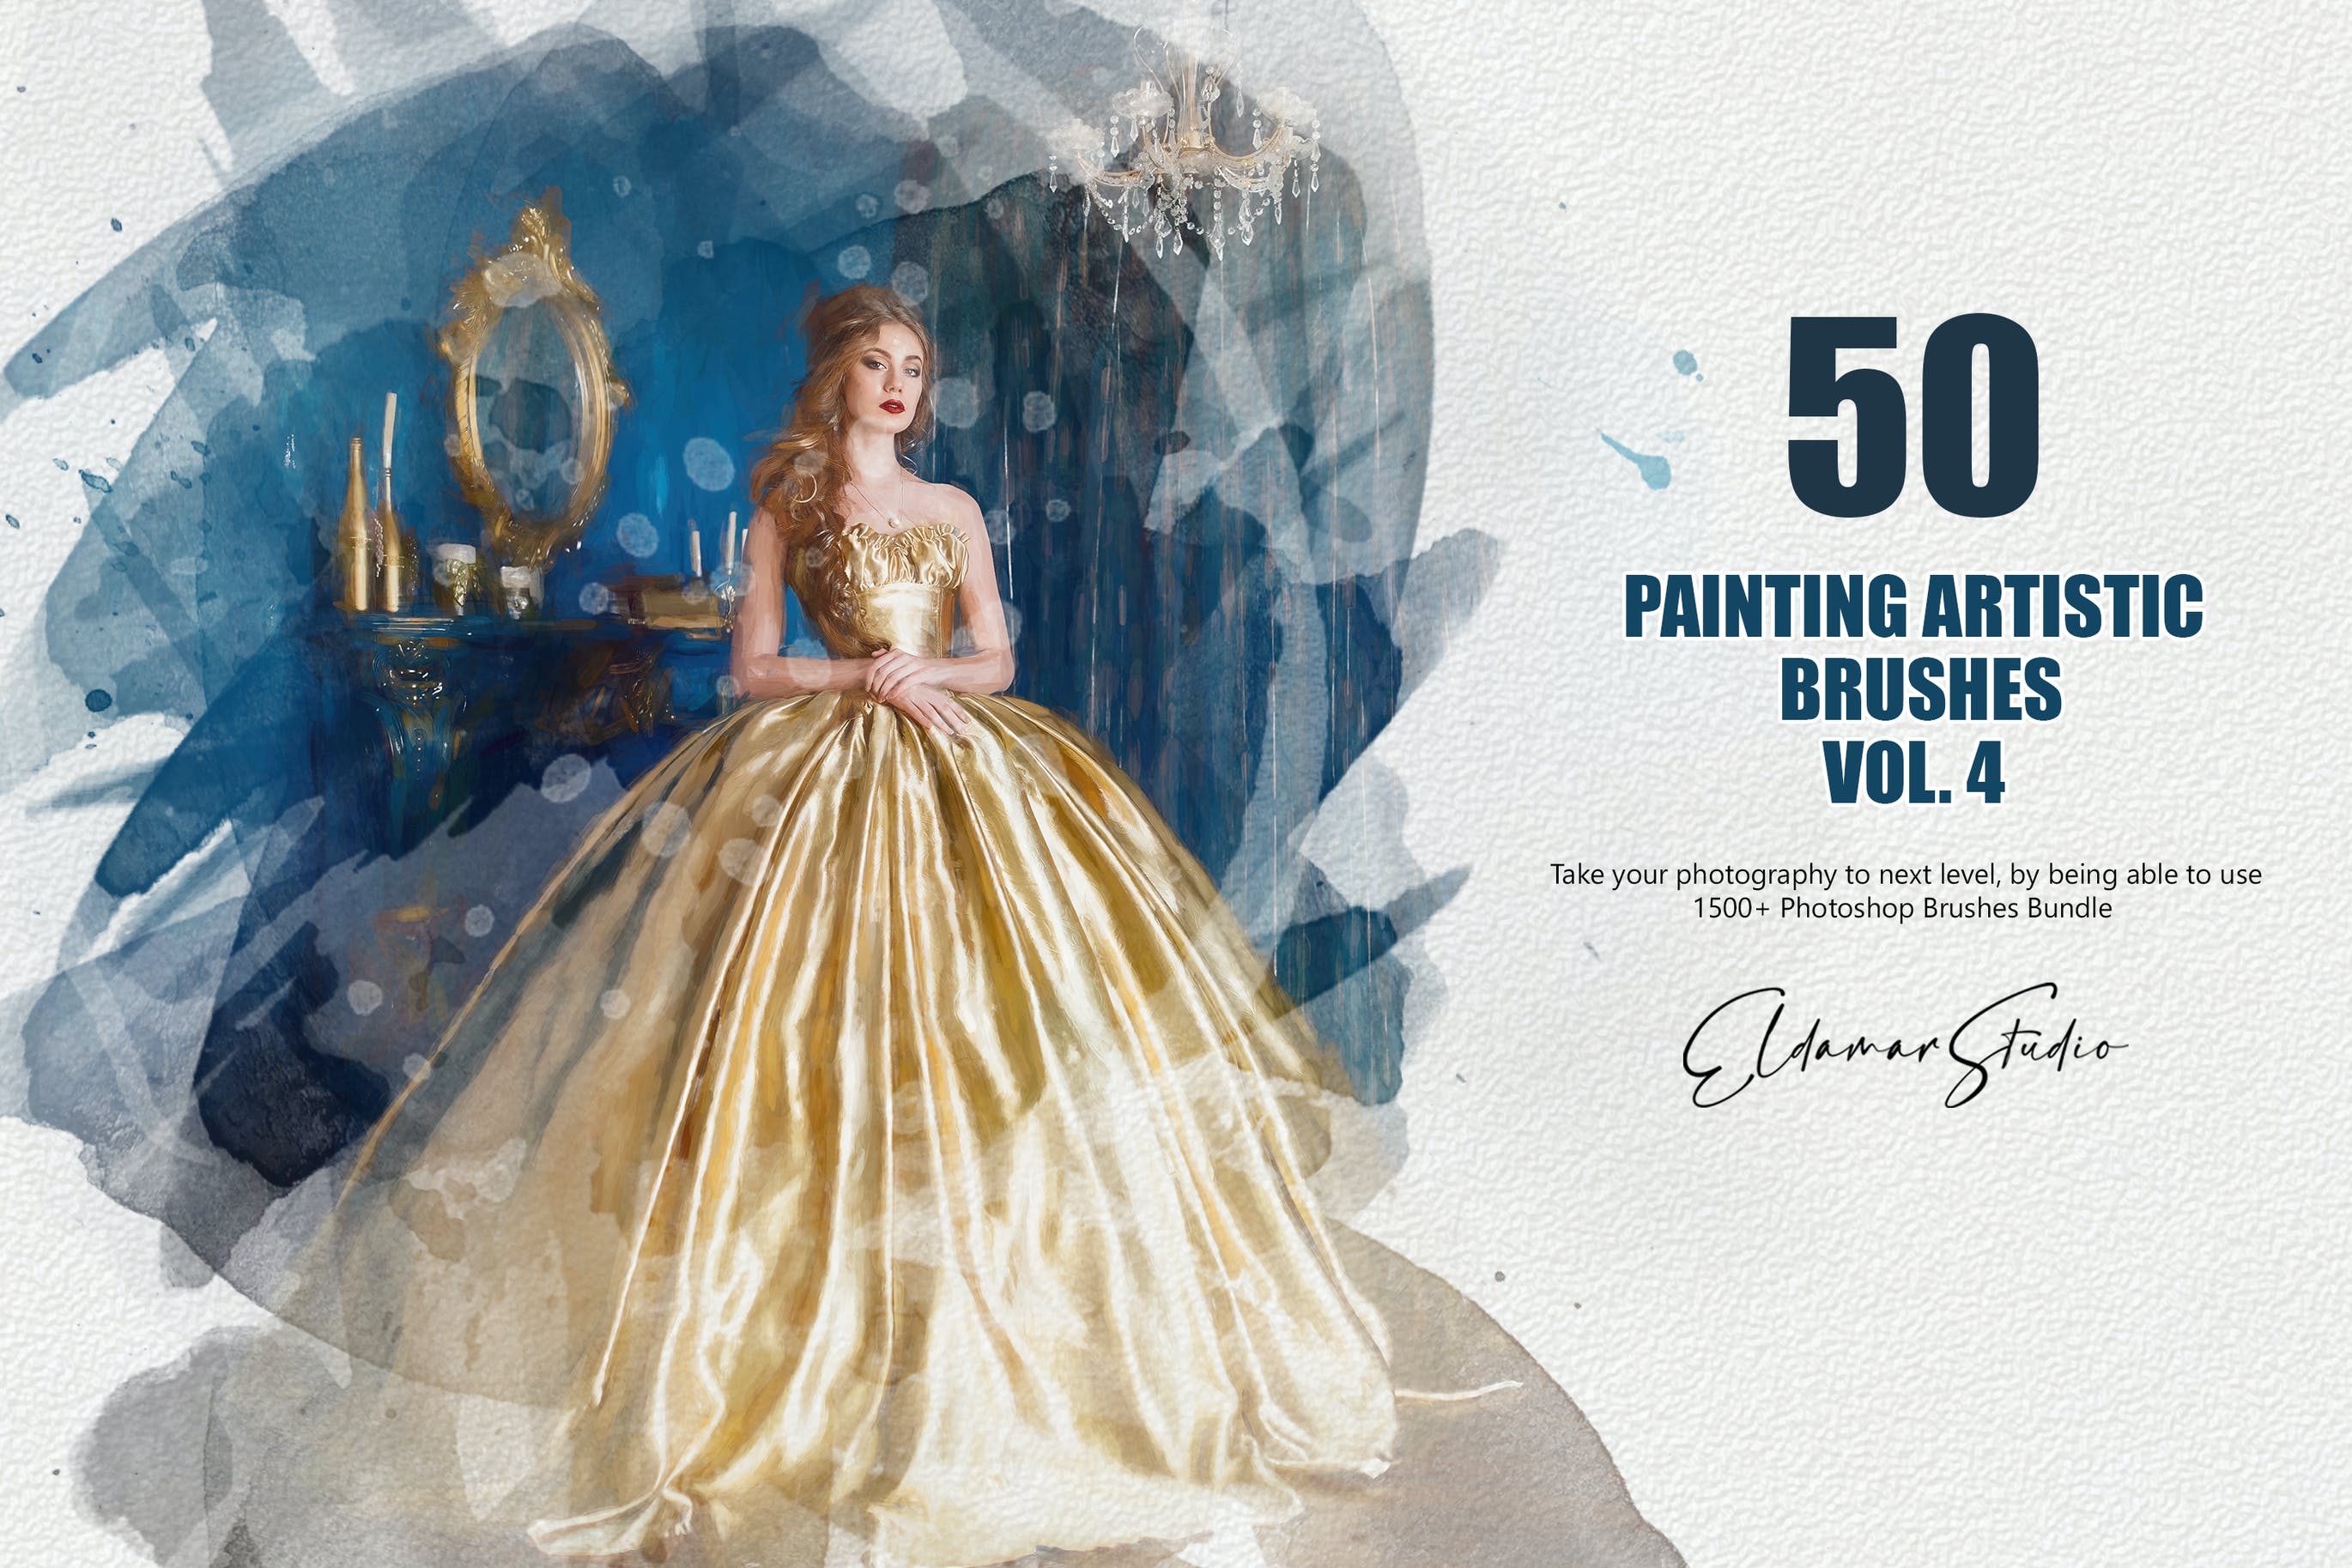 50个水彩艺术绘画笔刷素材v4 50 Painting Artistic Brushes – Vol. 4 笔刷资源 第1张